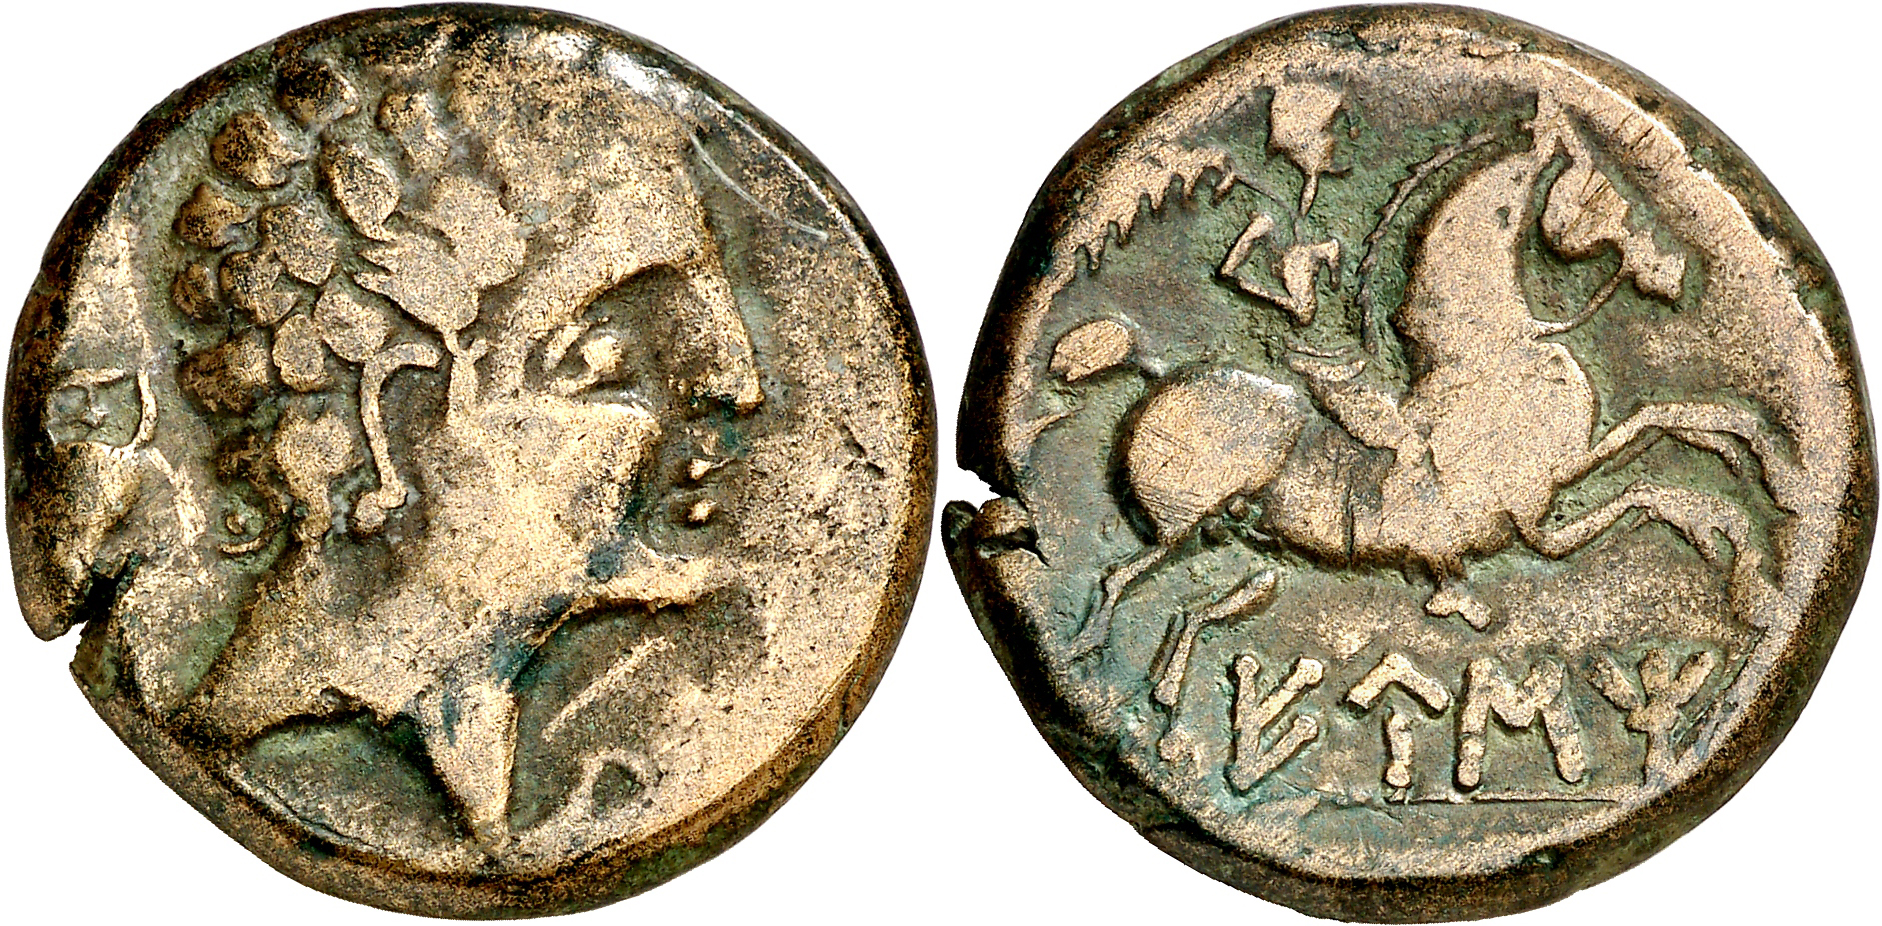 Eustibaikula - Eusti As. Cabeza masculina a derecha sin torcas, detrás ánfora/ Jinete con palma a derecha, debajo leyenda EUSTI núm. 2. Emisiones de la segunda mitad del s. II ac, ACIP 1318 1262